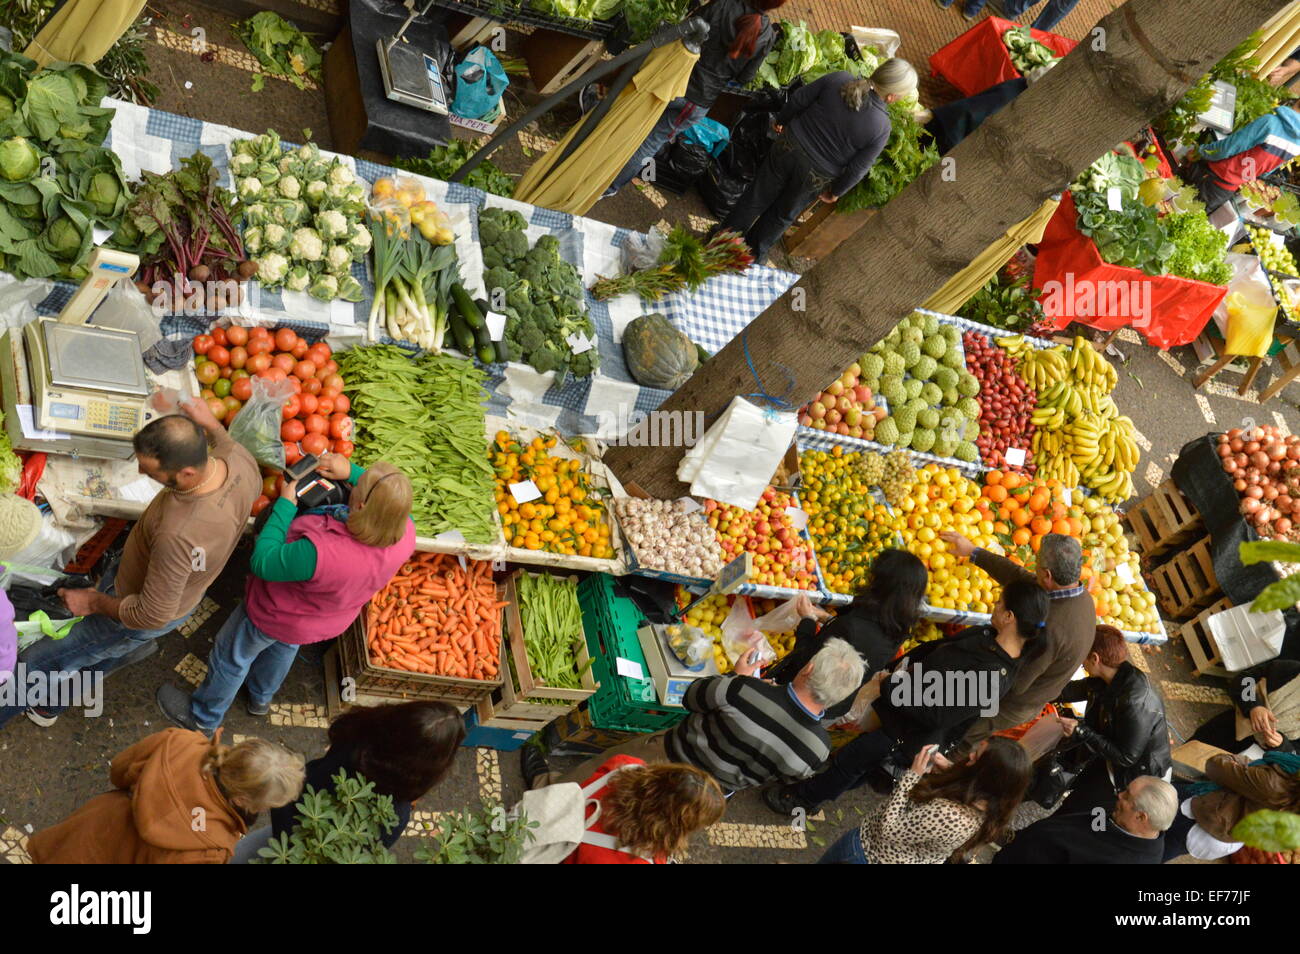 Menschen beim Einkaufen für frisches Obst und Gemüse am Marktstand Stockfoto